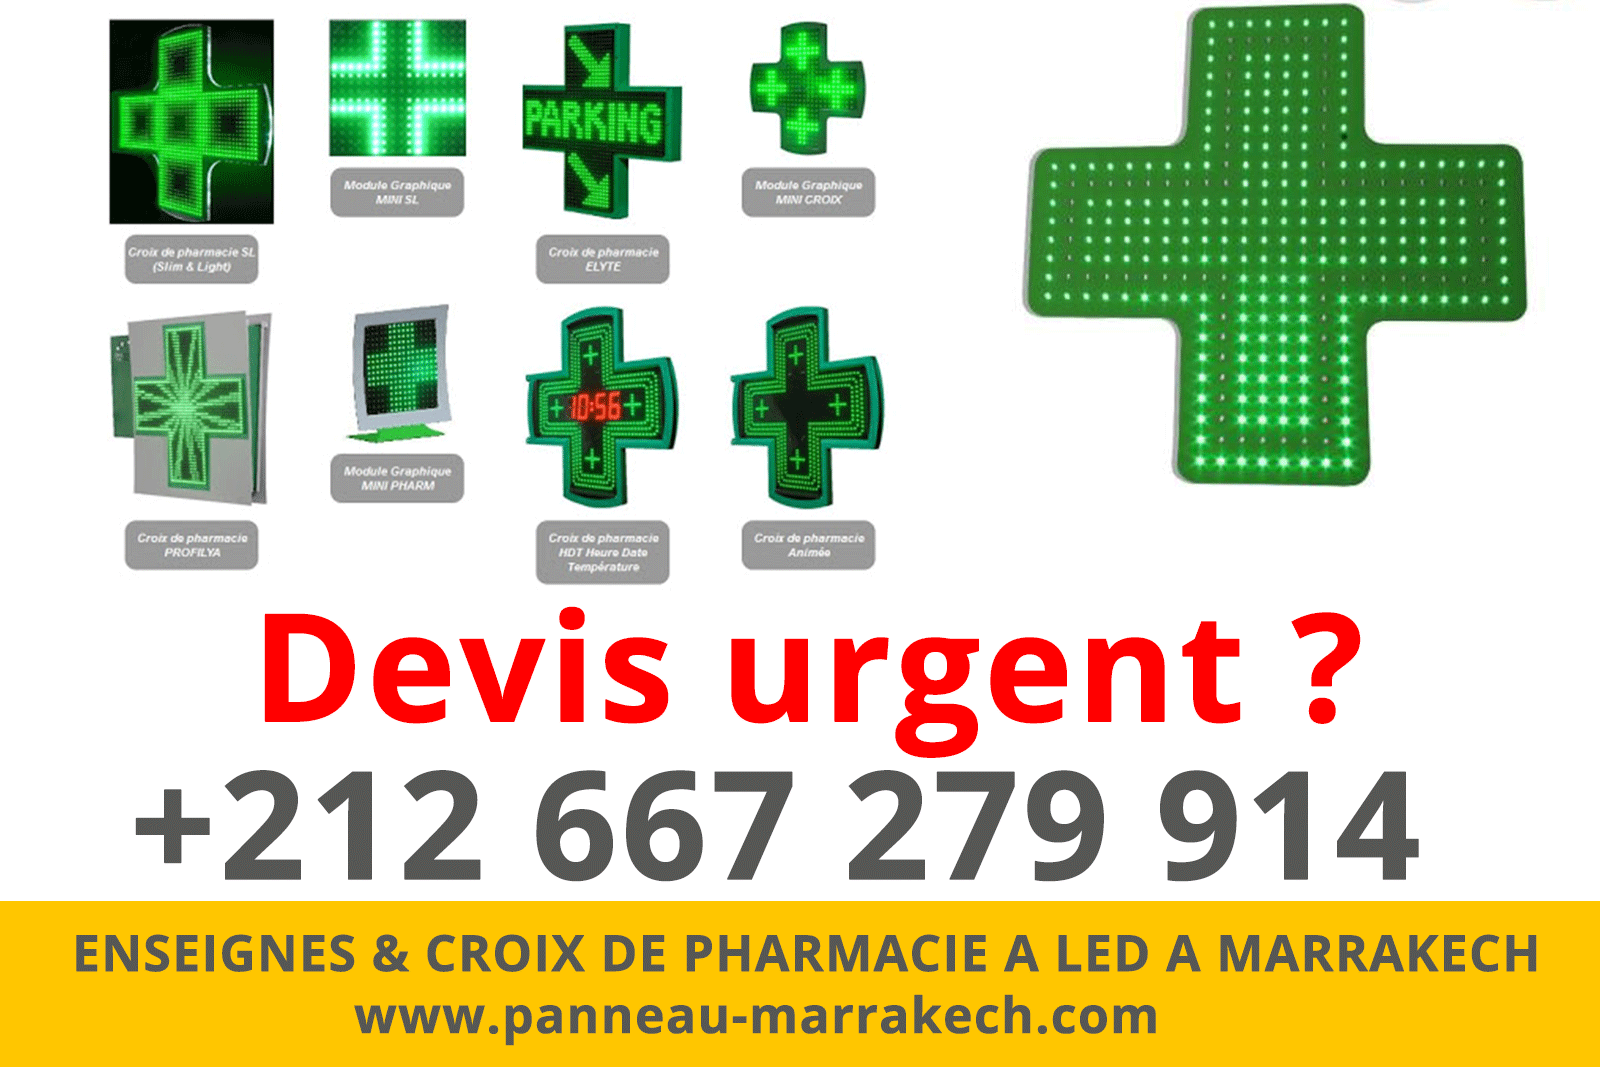 ENSEIGNES & CROIX DE PHARMACIE A LED A MARRAKECH habillage facade pharmacie marrakech